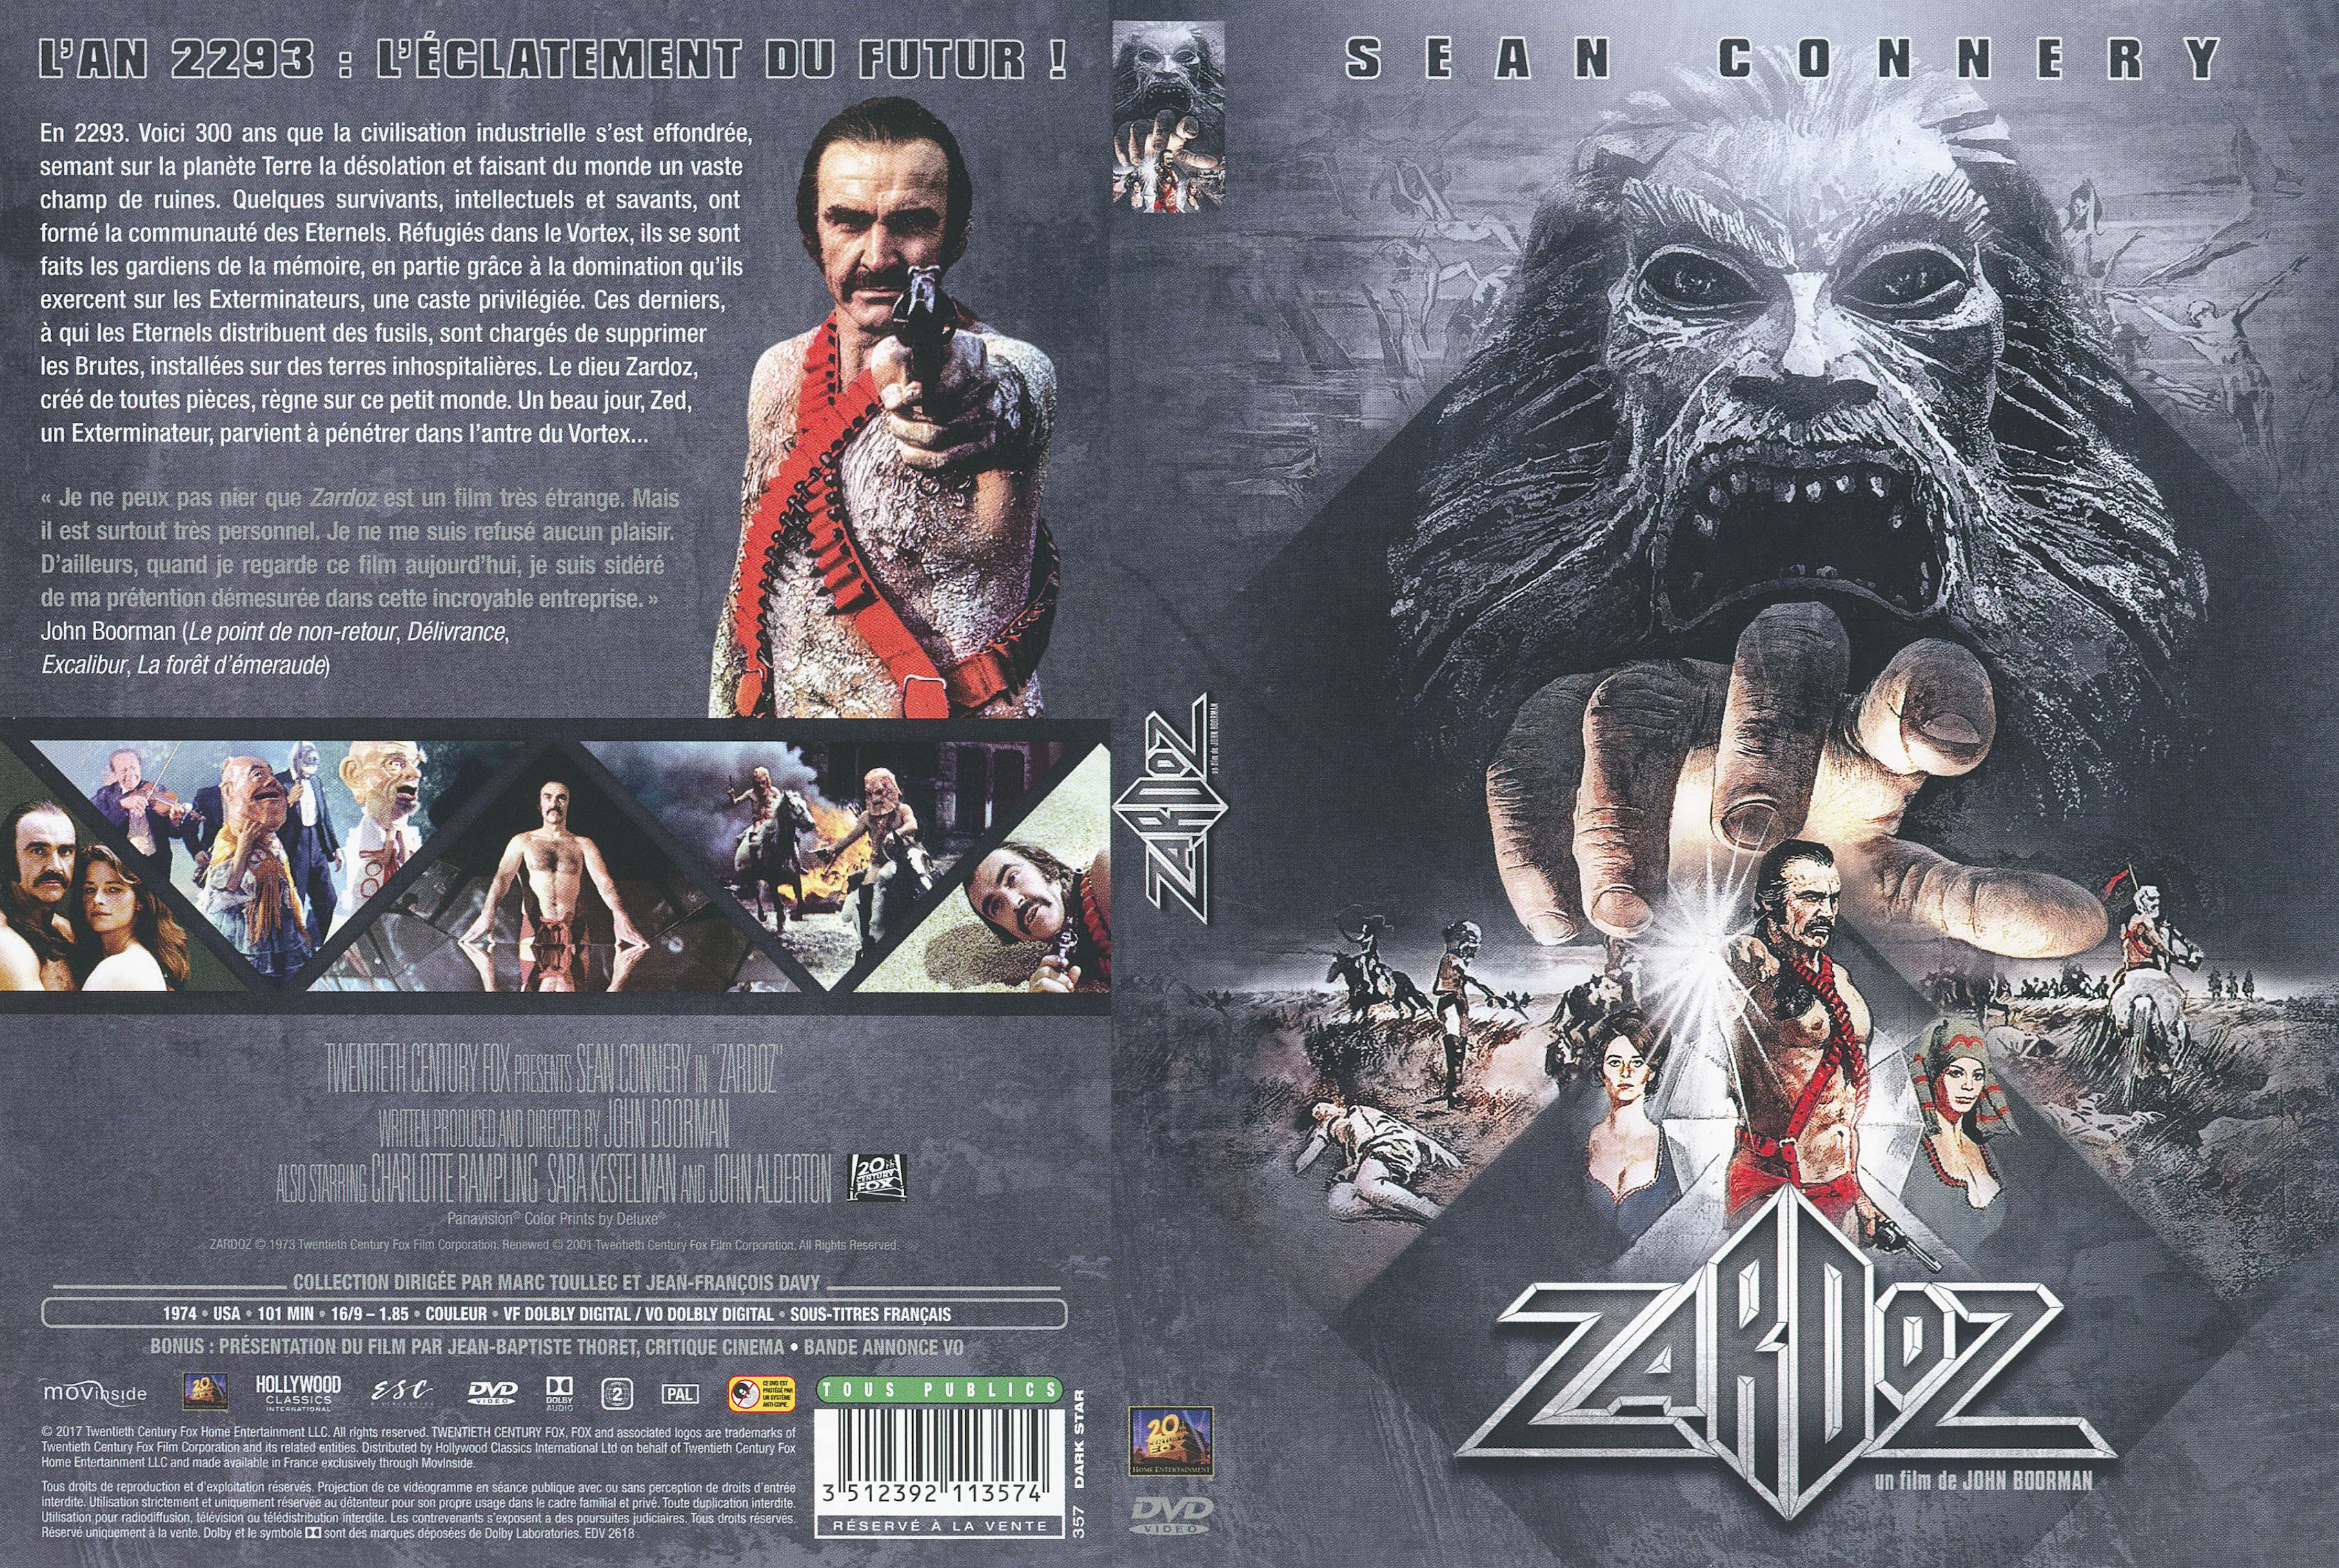 Jaquette DVD Zardoz v2